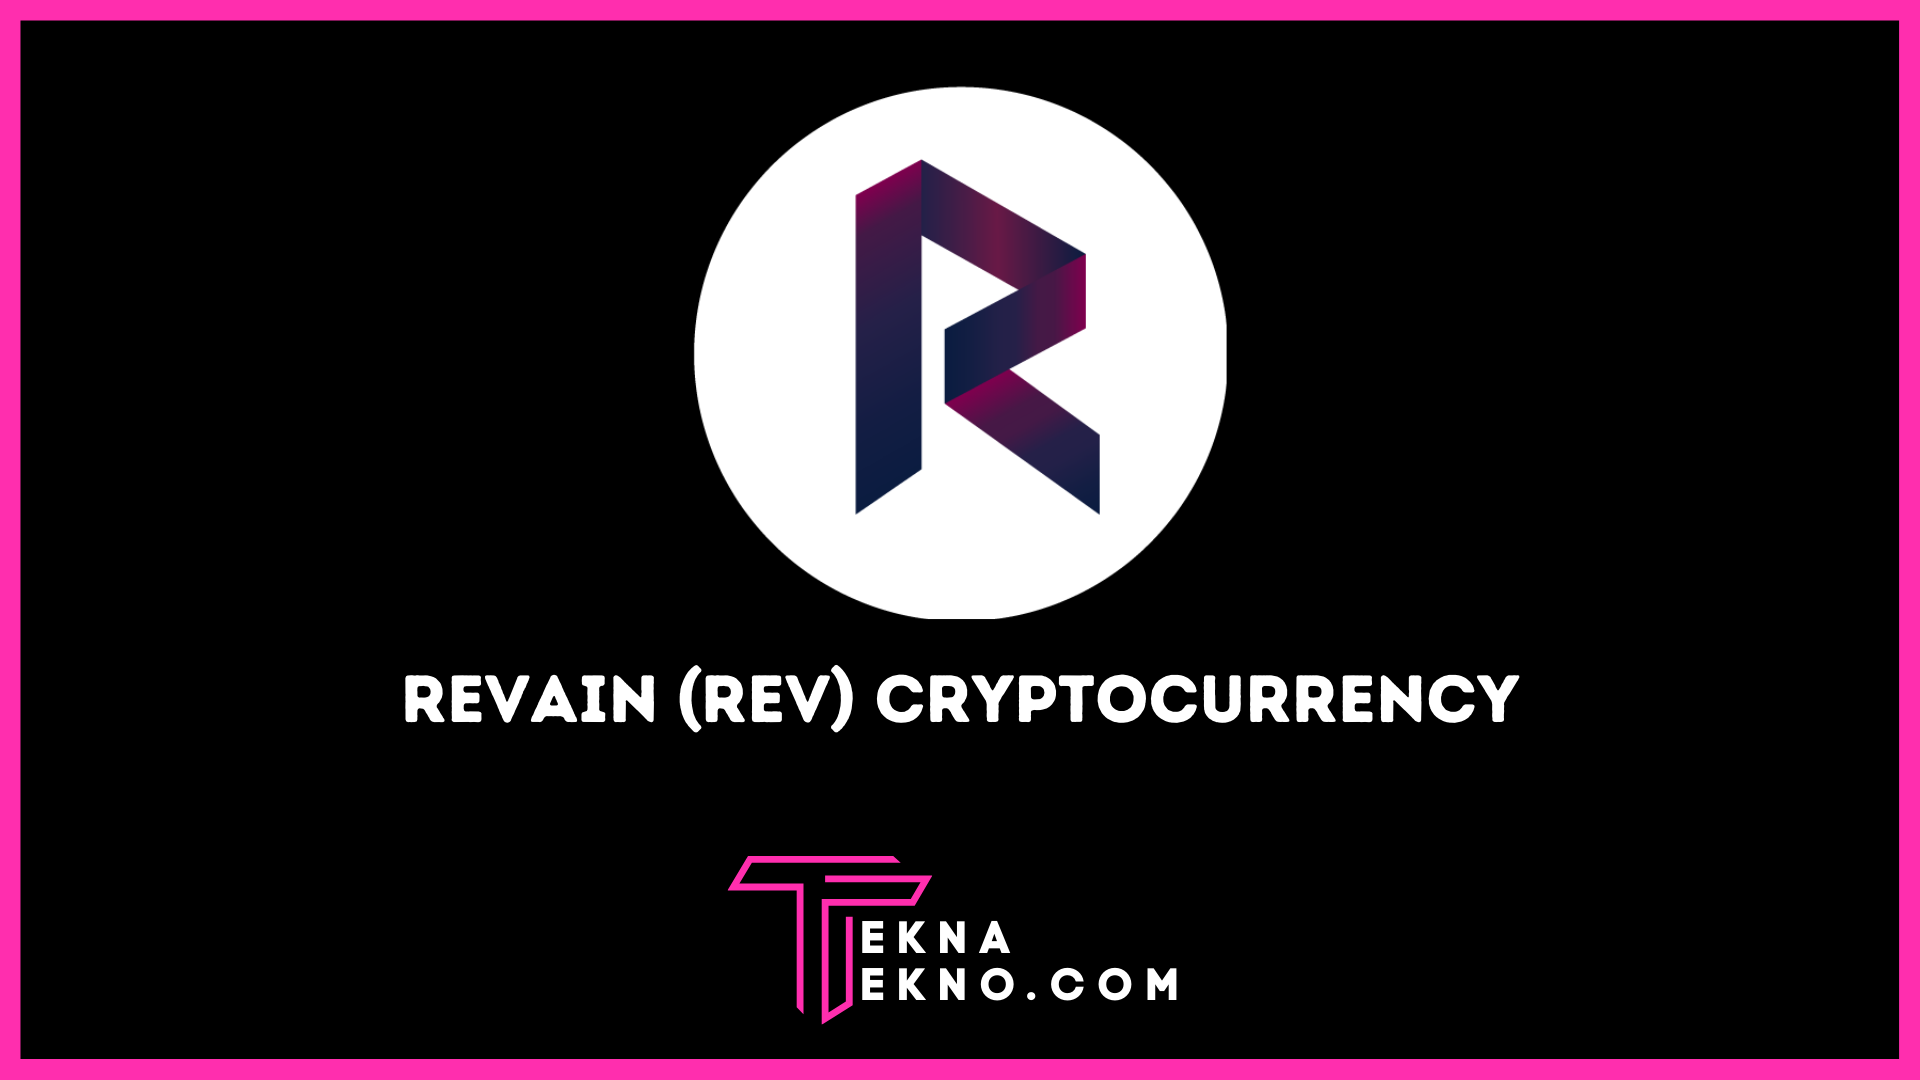 Revain (REV) Cryptocurrency: Pengertian, Harga, dan Tempat Beli